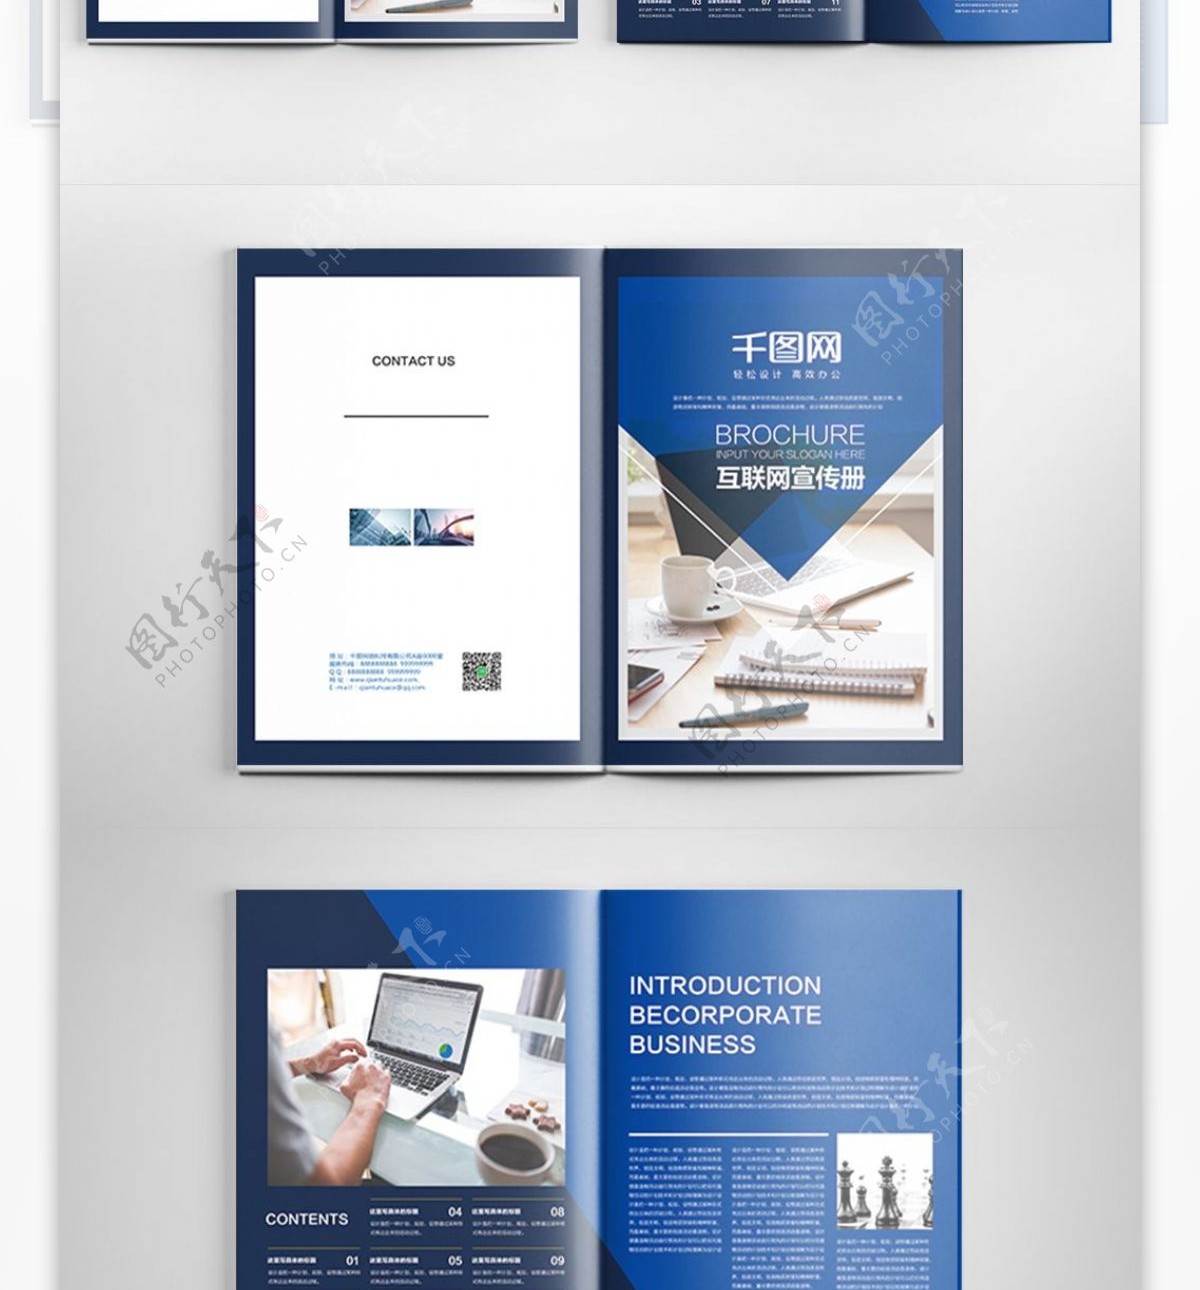 蓝色时尚互联网公司画册PSD模板